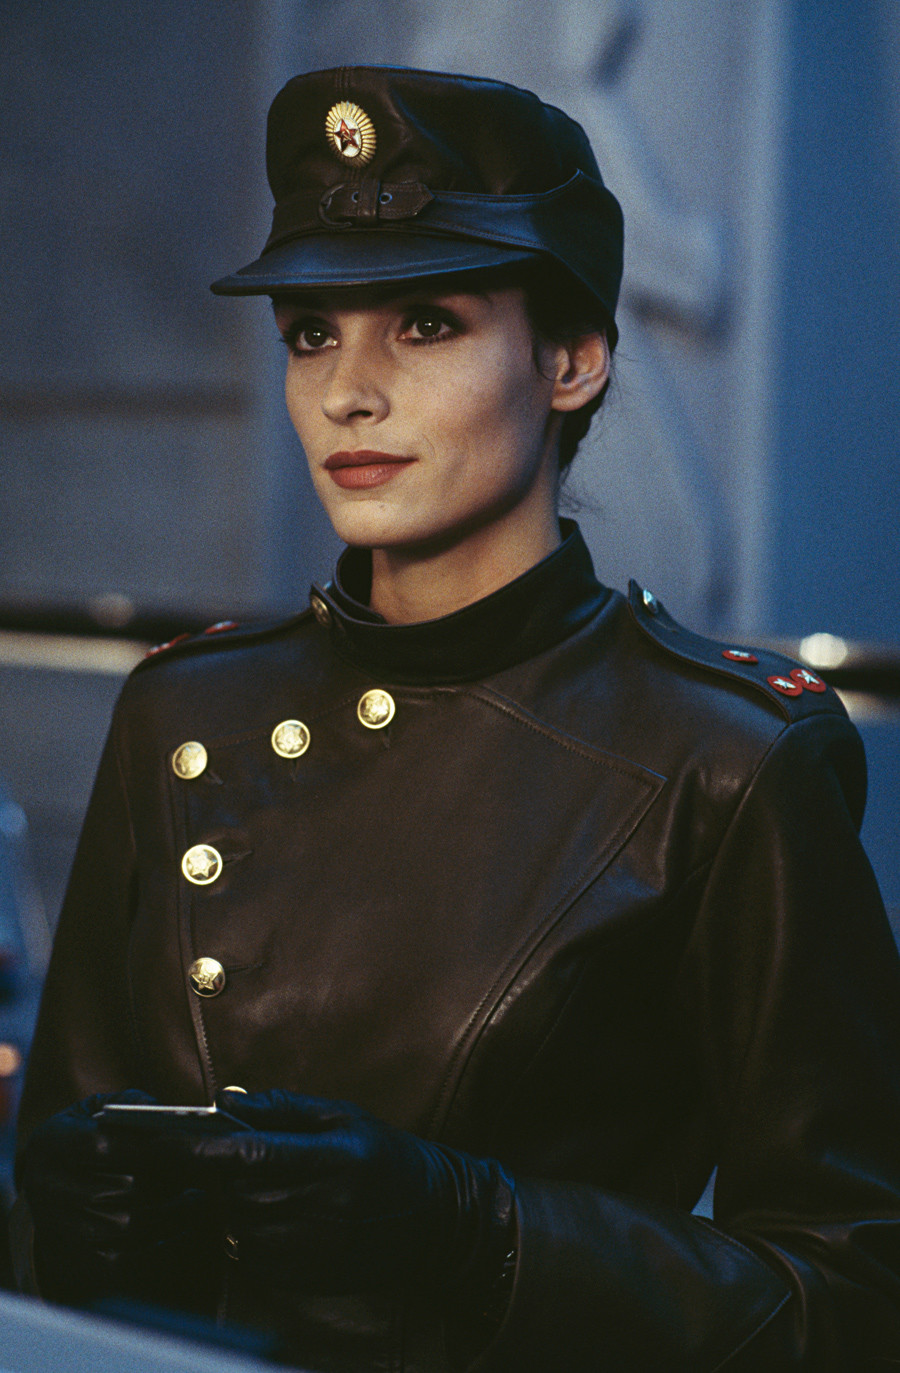 Dutch-born actress Famke Janssen stars as the villainous Xenia Onatopp in the James Bond film 'GoldenEye', 1995